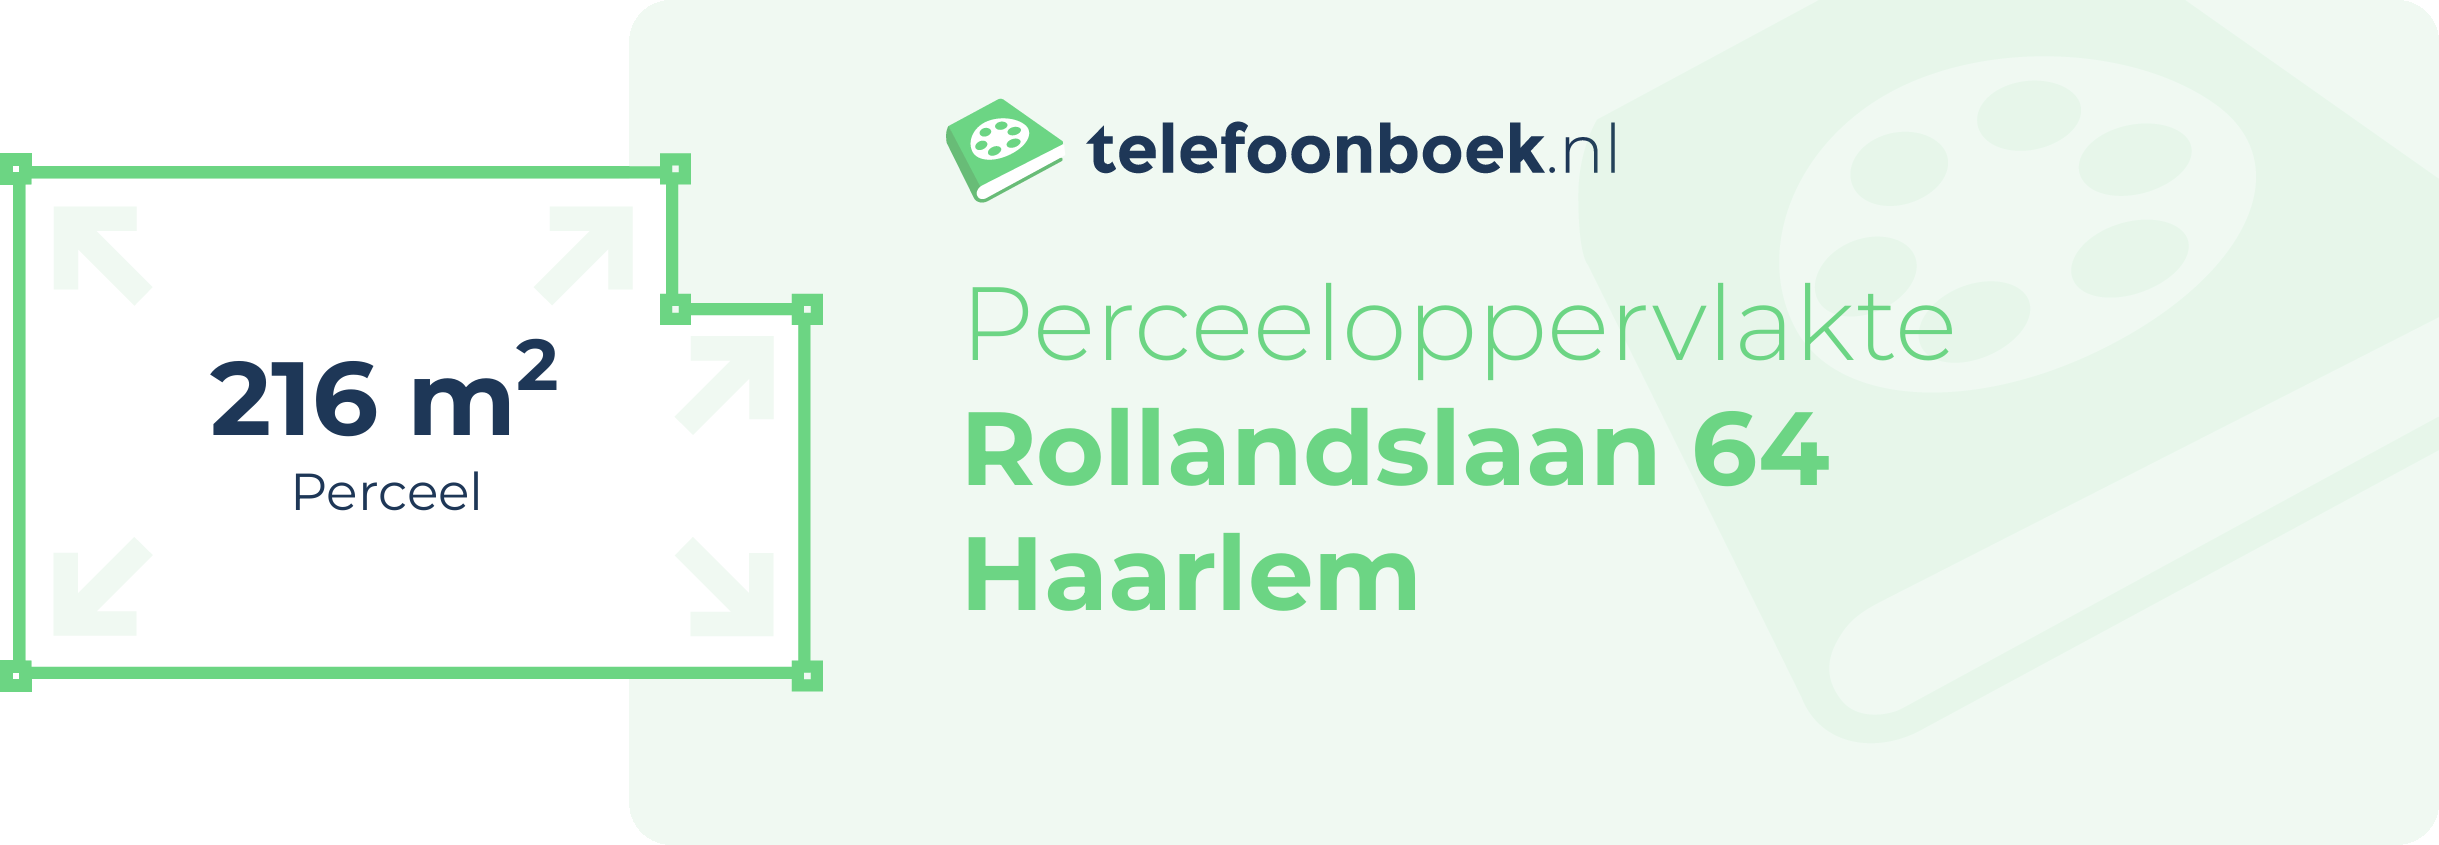 Perceeloppervlakte Rollandslaan 64 Haarlem